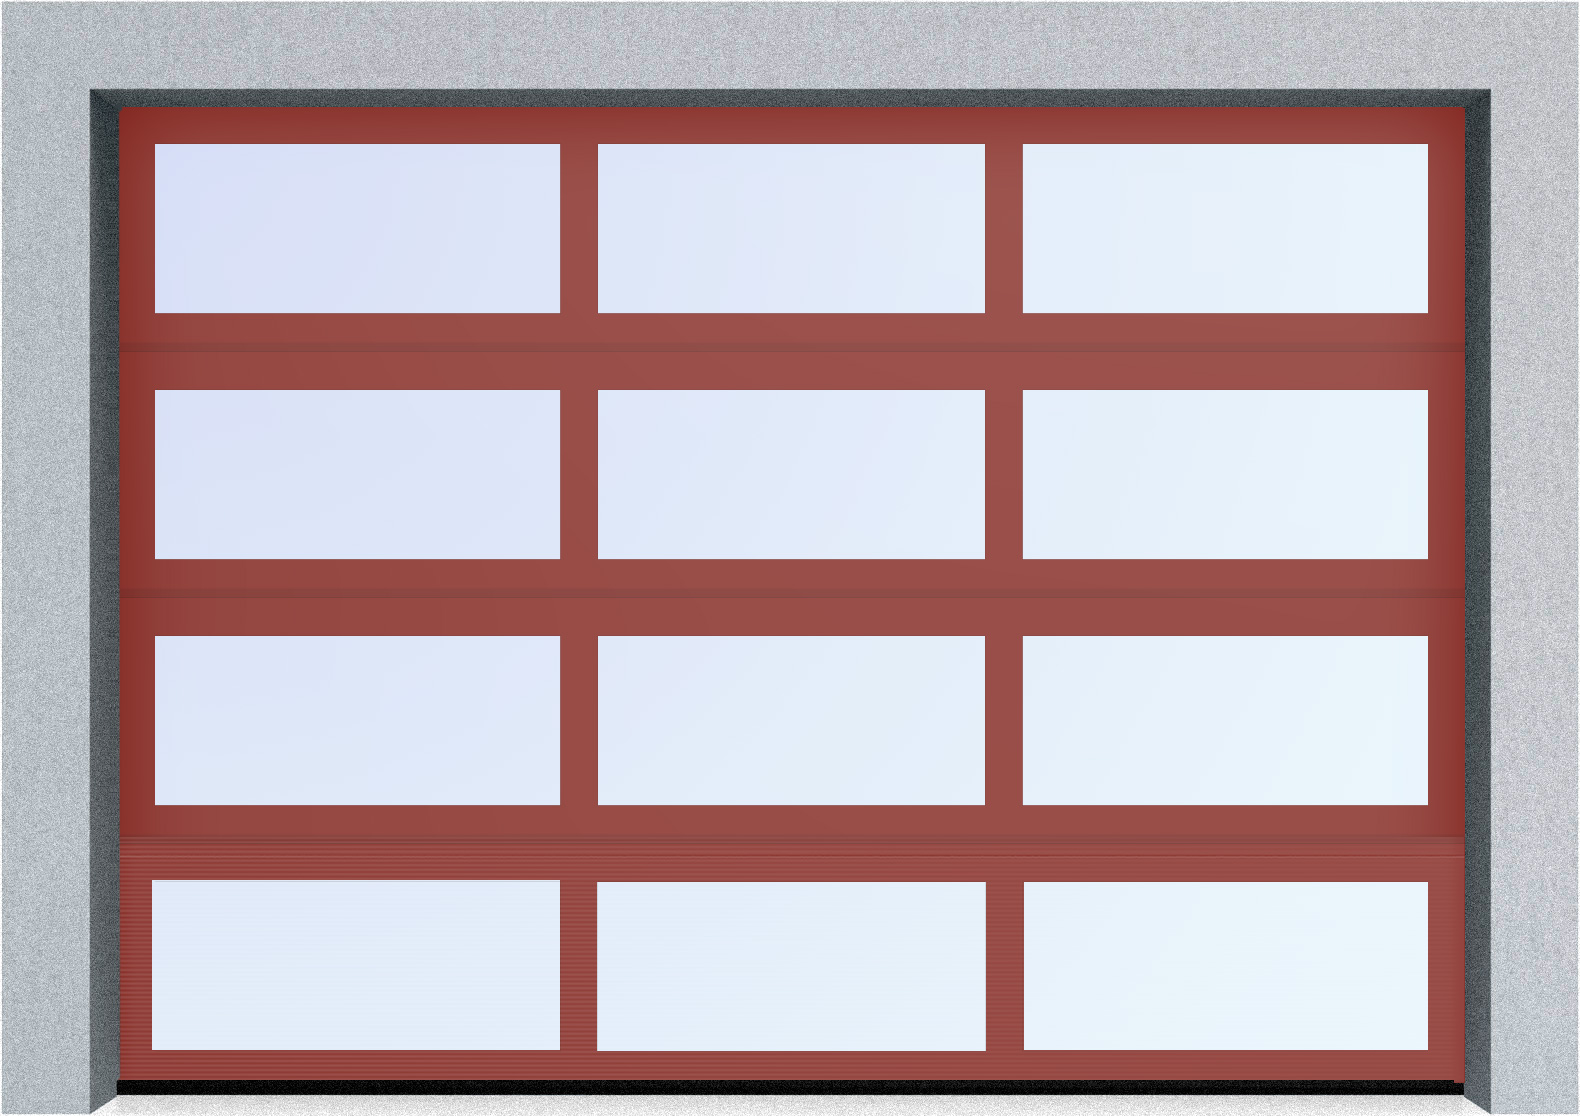  Секционные панорамные ворота серии AluTrend (АЛП) 5000х4500 нижняя панель стандартные цвета, фото 2 